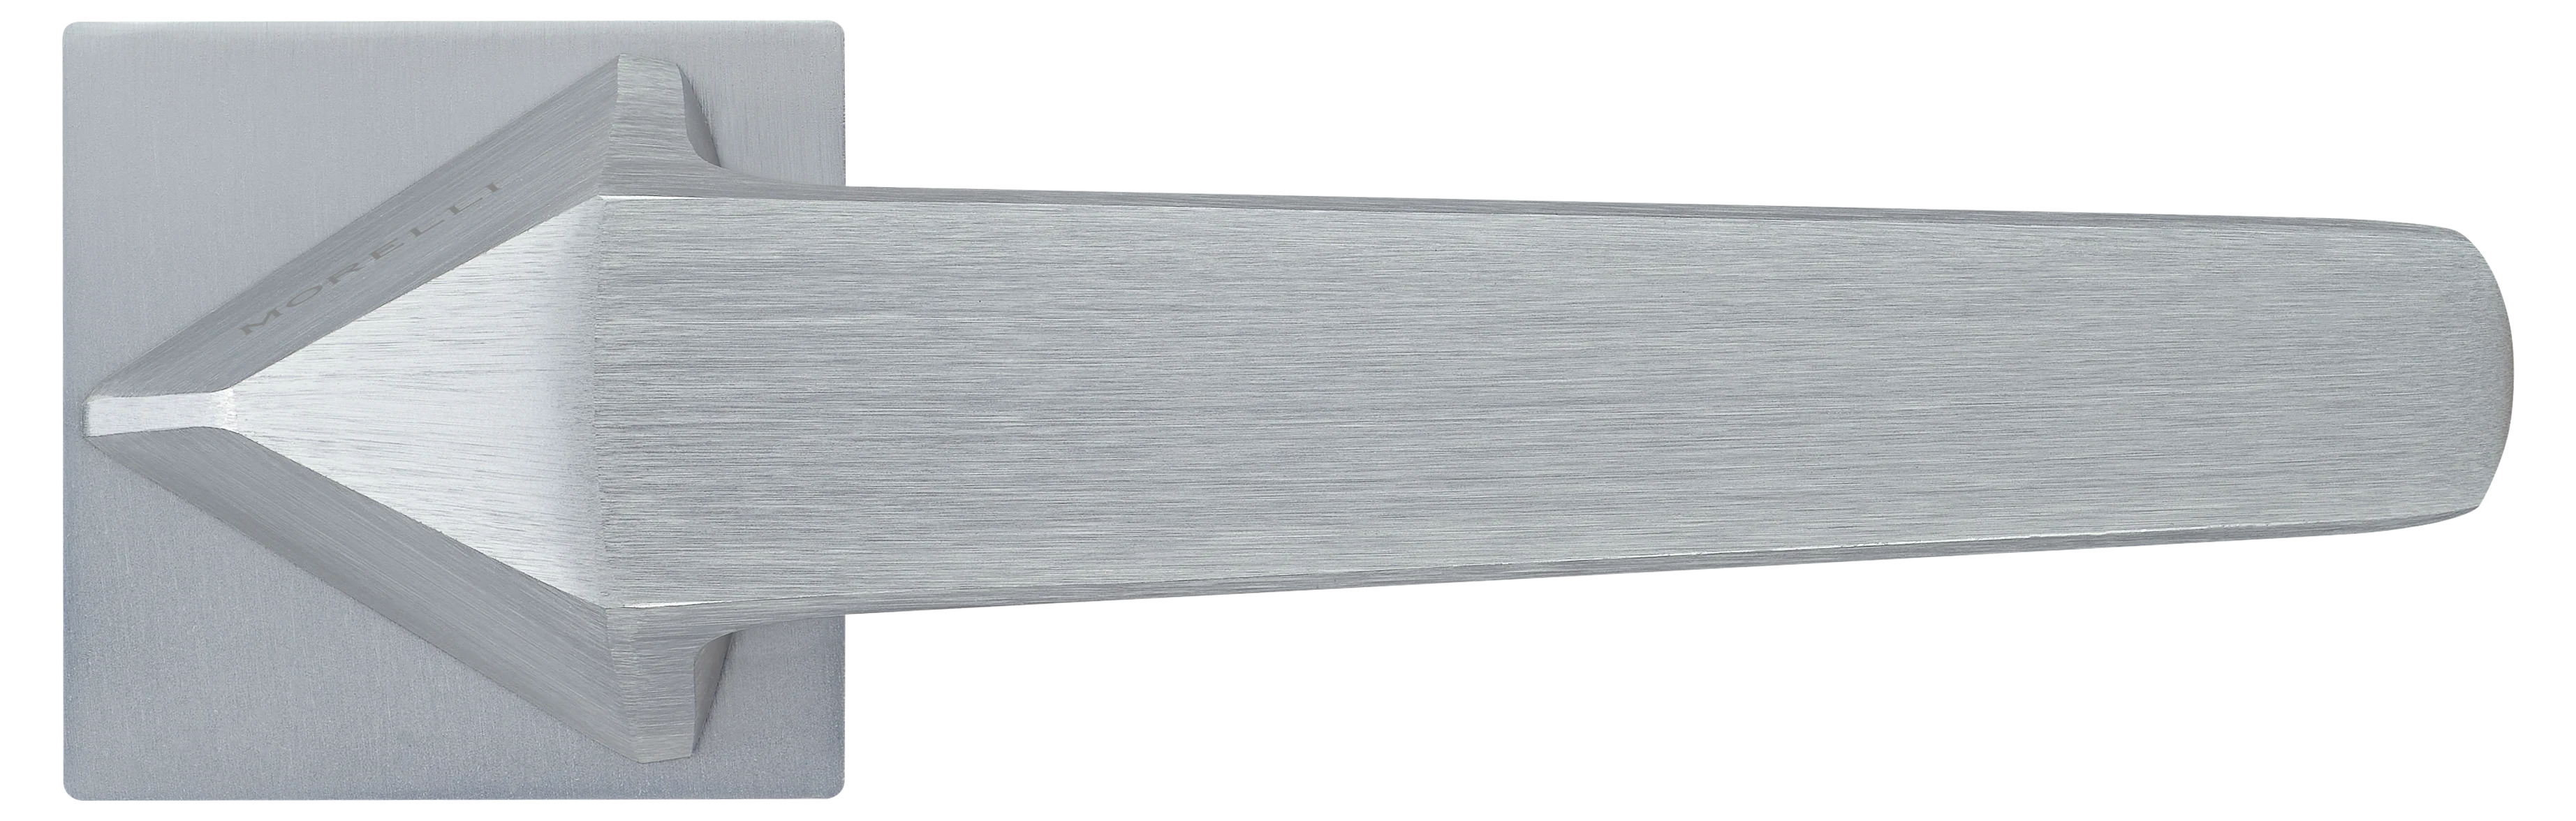 SOUK ручка дверная  на квадратной розетке 6 мм, MH-55-S6 SSC, цвет - суперматовый хром фото купить в Саратове